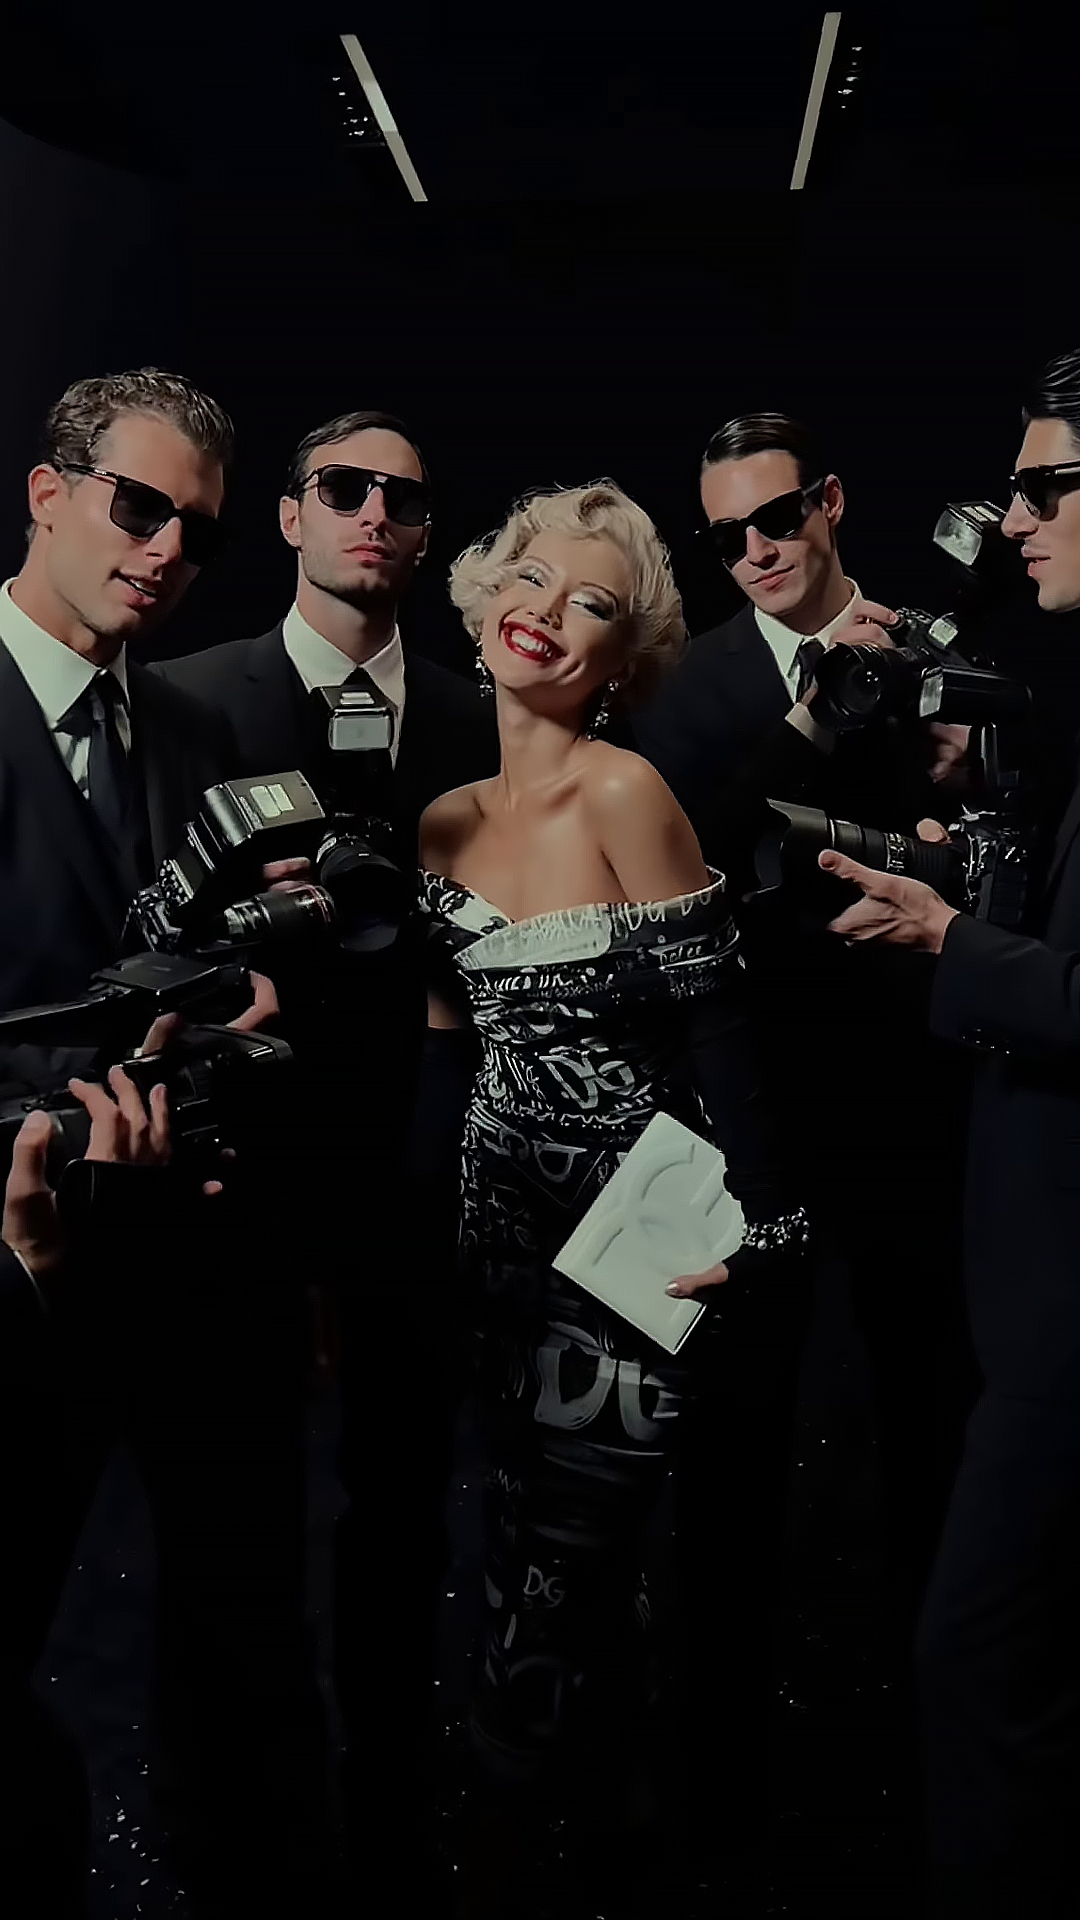 Tại sự kiện, nữ fashionista chọn một set đồ cực kỳ “Dolce&Gabbana” nhưng vẫn thể hiện được chất “Cô Em Trendy” vốn có của mình. Điểm nhấn cho lần này chính là mái tóc bạch kim được uốn và tạo kiểu cầu kì cùng với layout makeup đậm chất Marilyn Monroe thời kỳ đỉnh cao. Cô cho biết bản thân đã mất hơn một giờ đồng hồ để hoàn thành makeup look này.